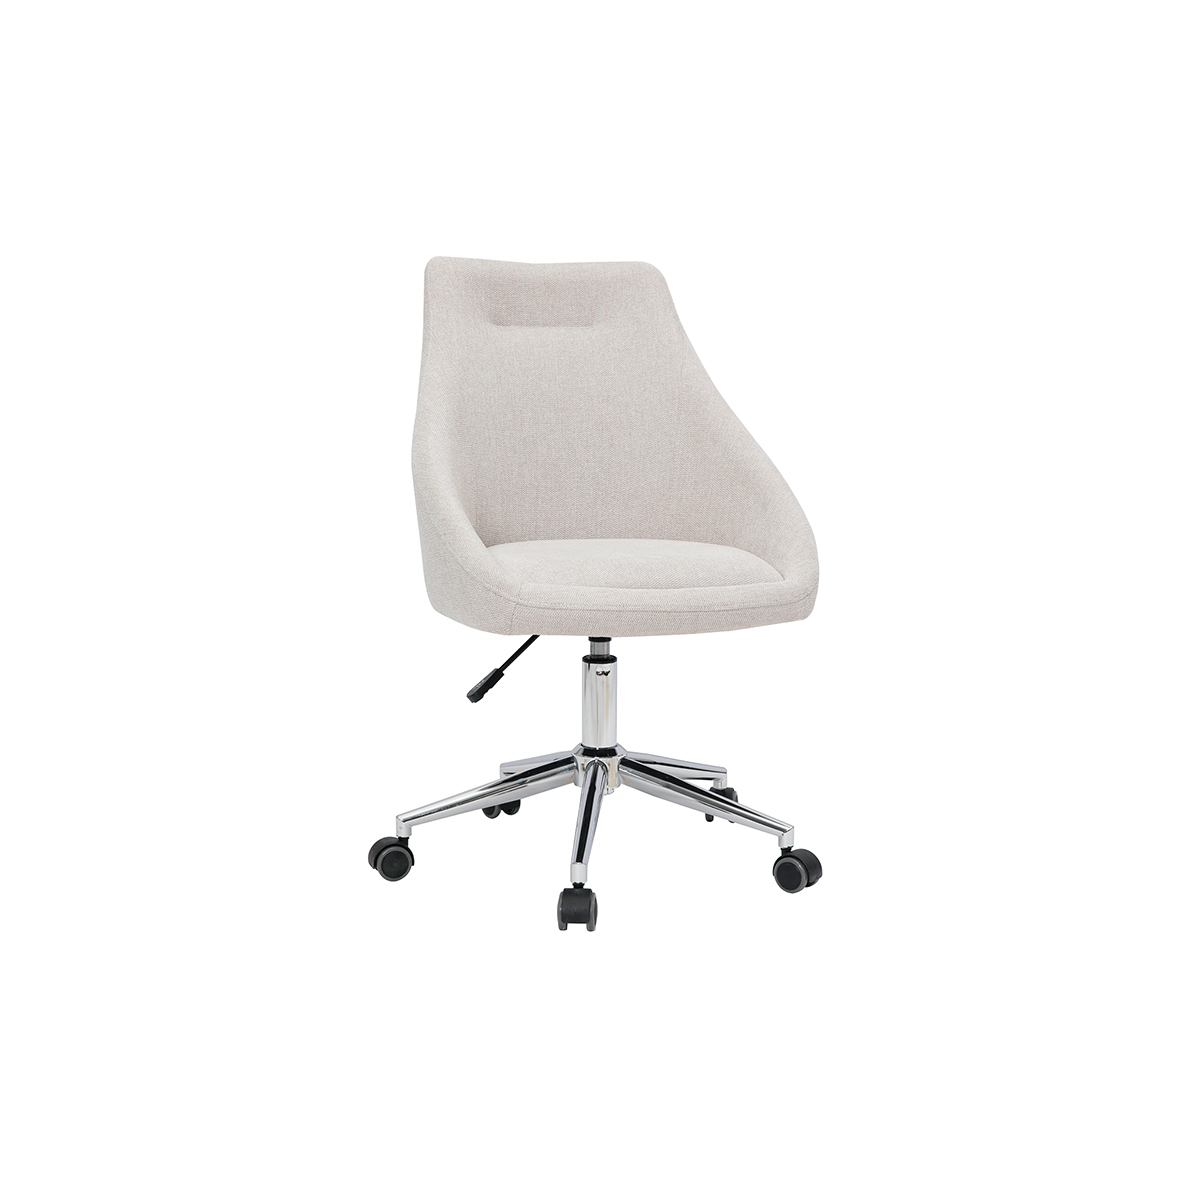 Chaise de bureau design tissu effet velours texturé beige et acier chromé BOOMER vue1